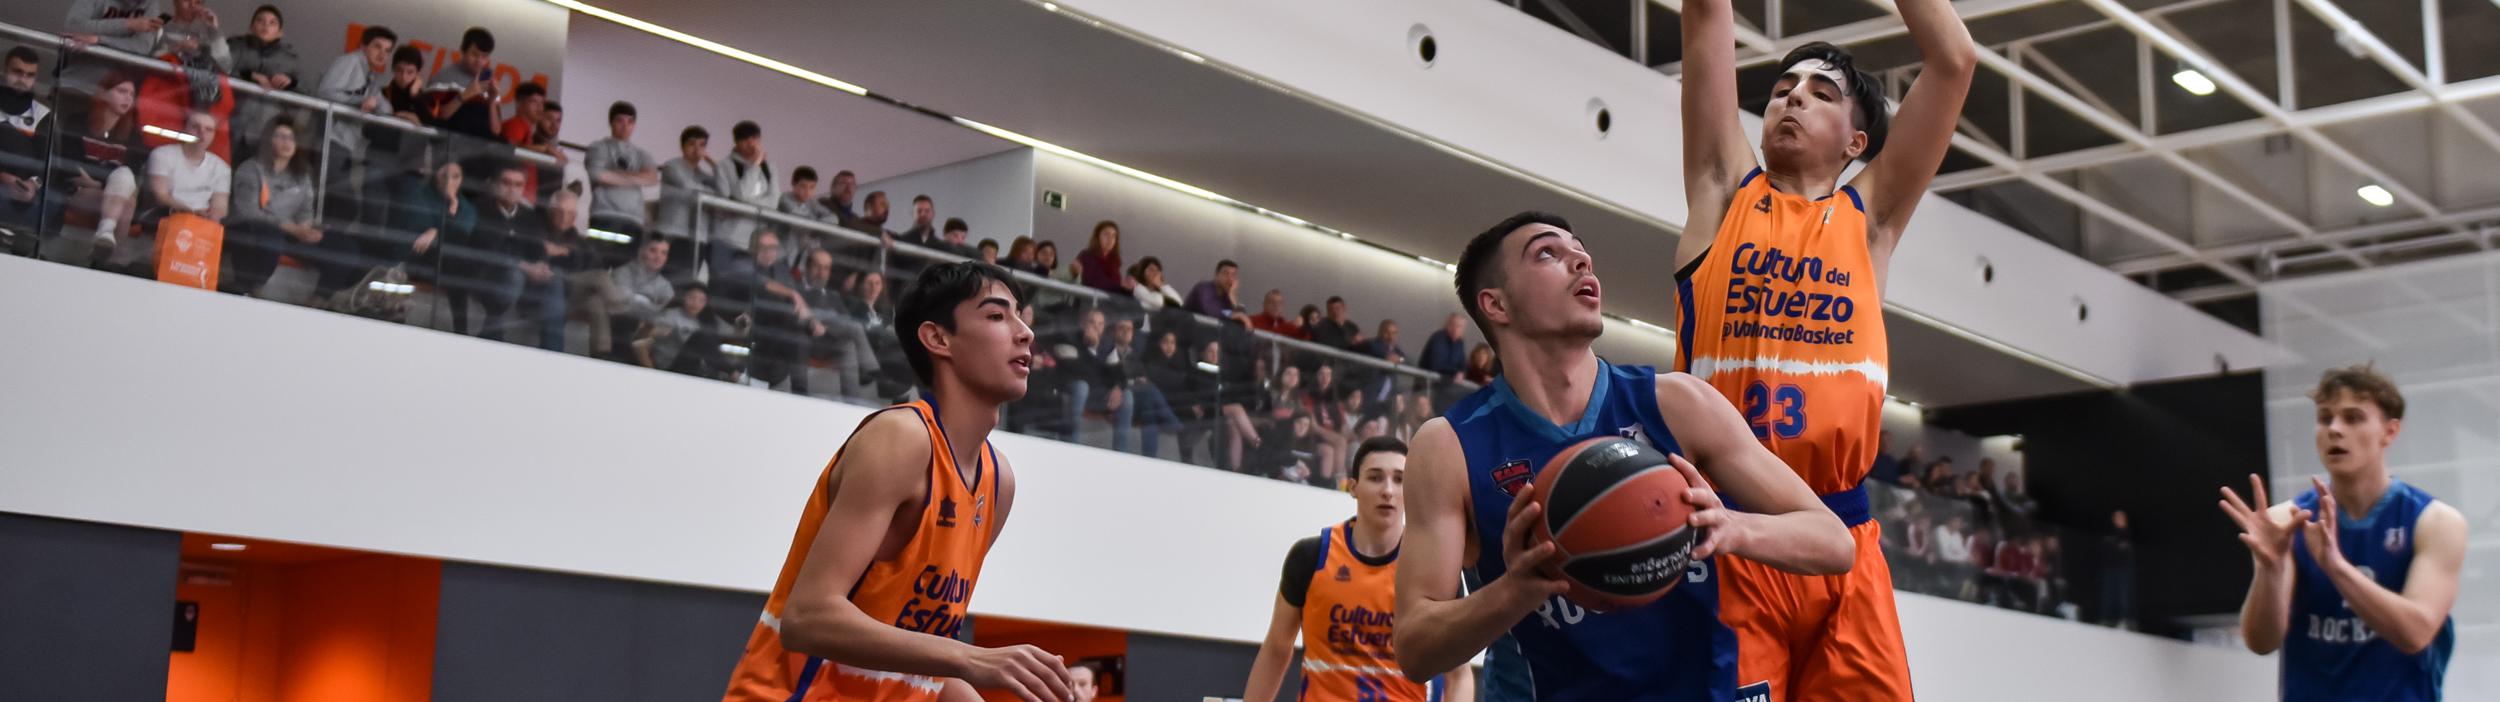 Cabecera Valencia Basket Cup